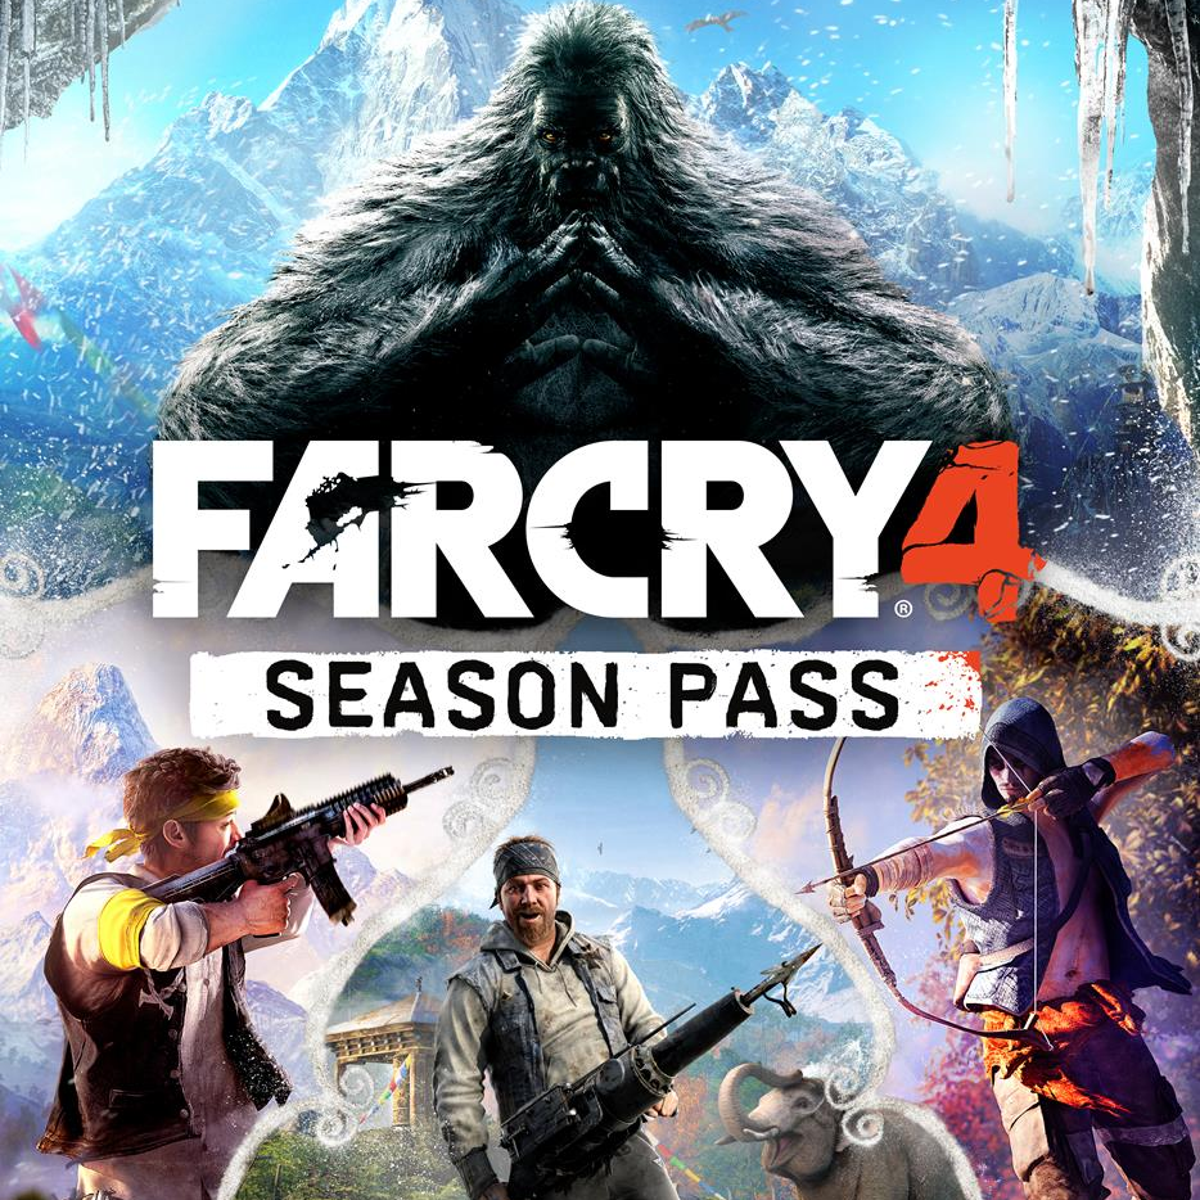 Far Cry 4 season pass lets you prison break, encounter yetis